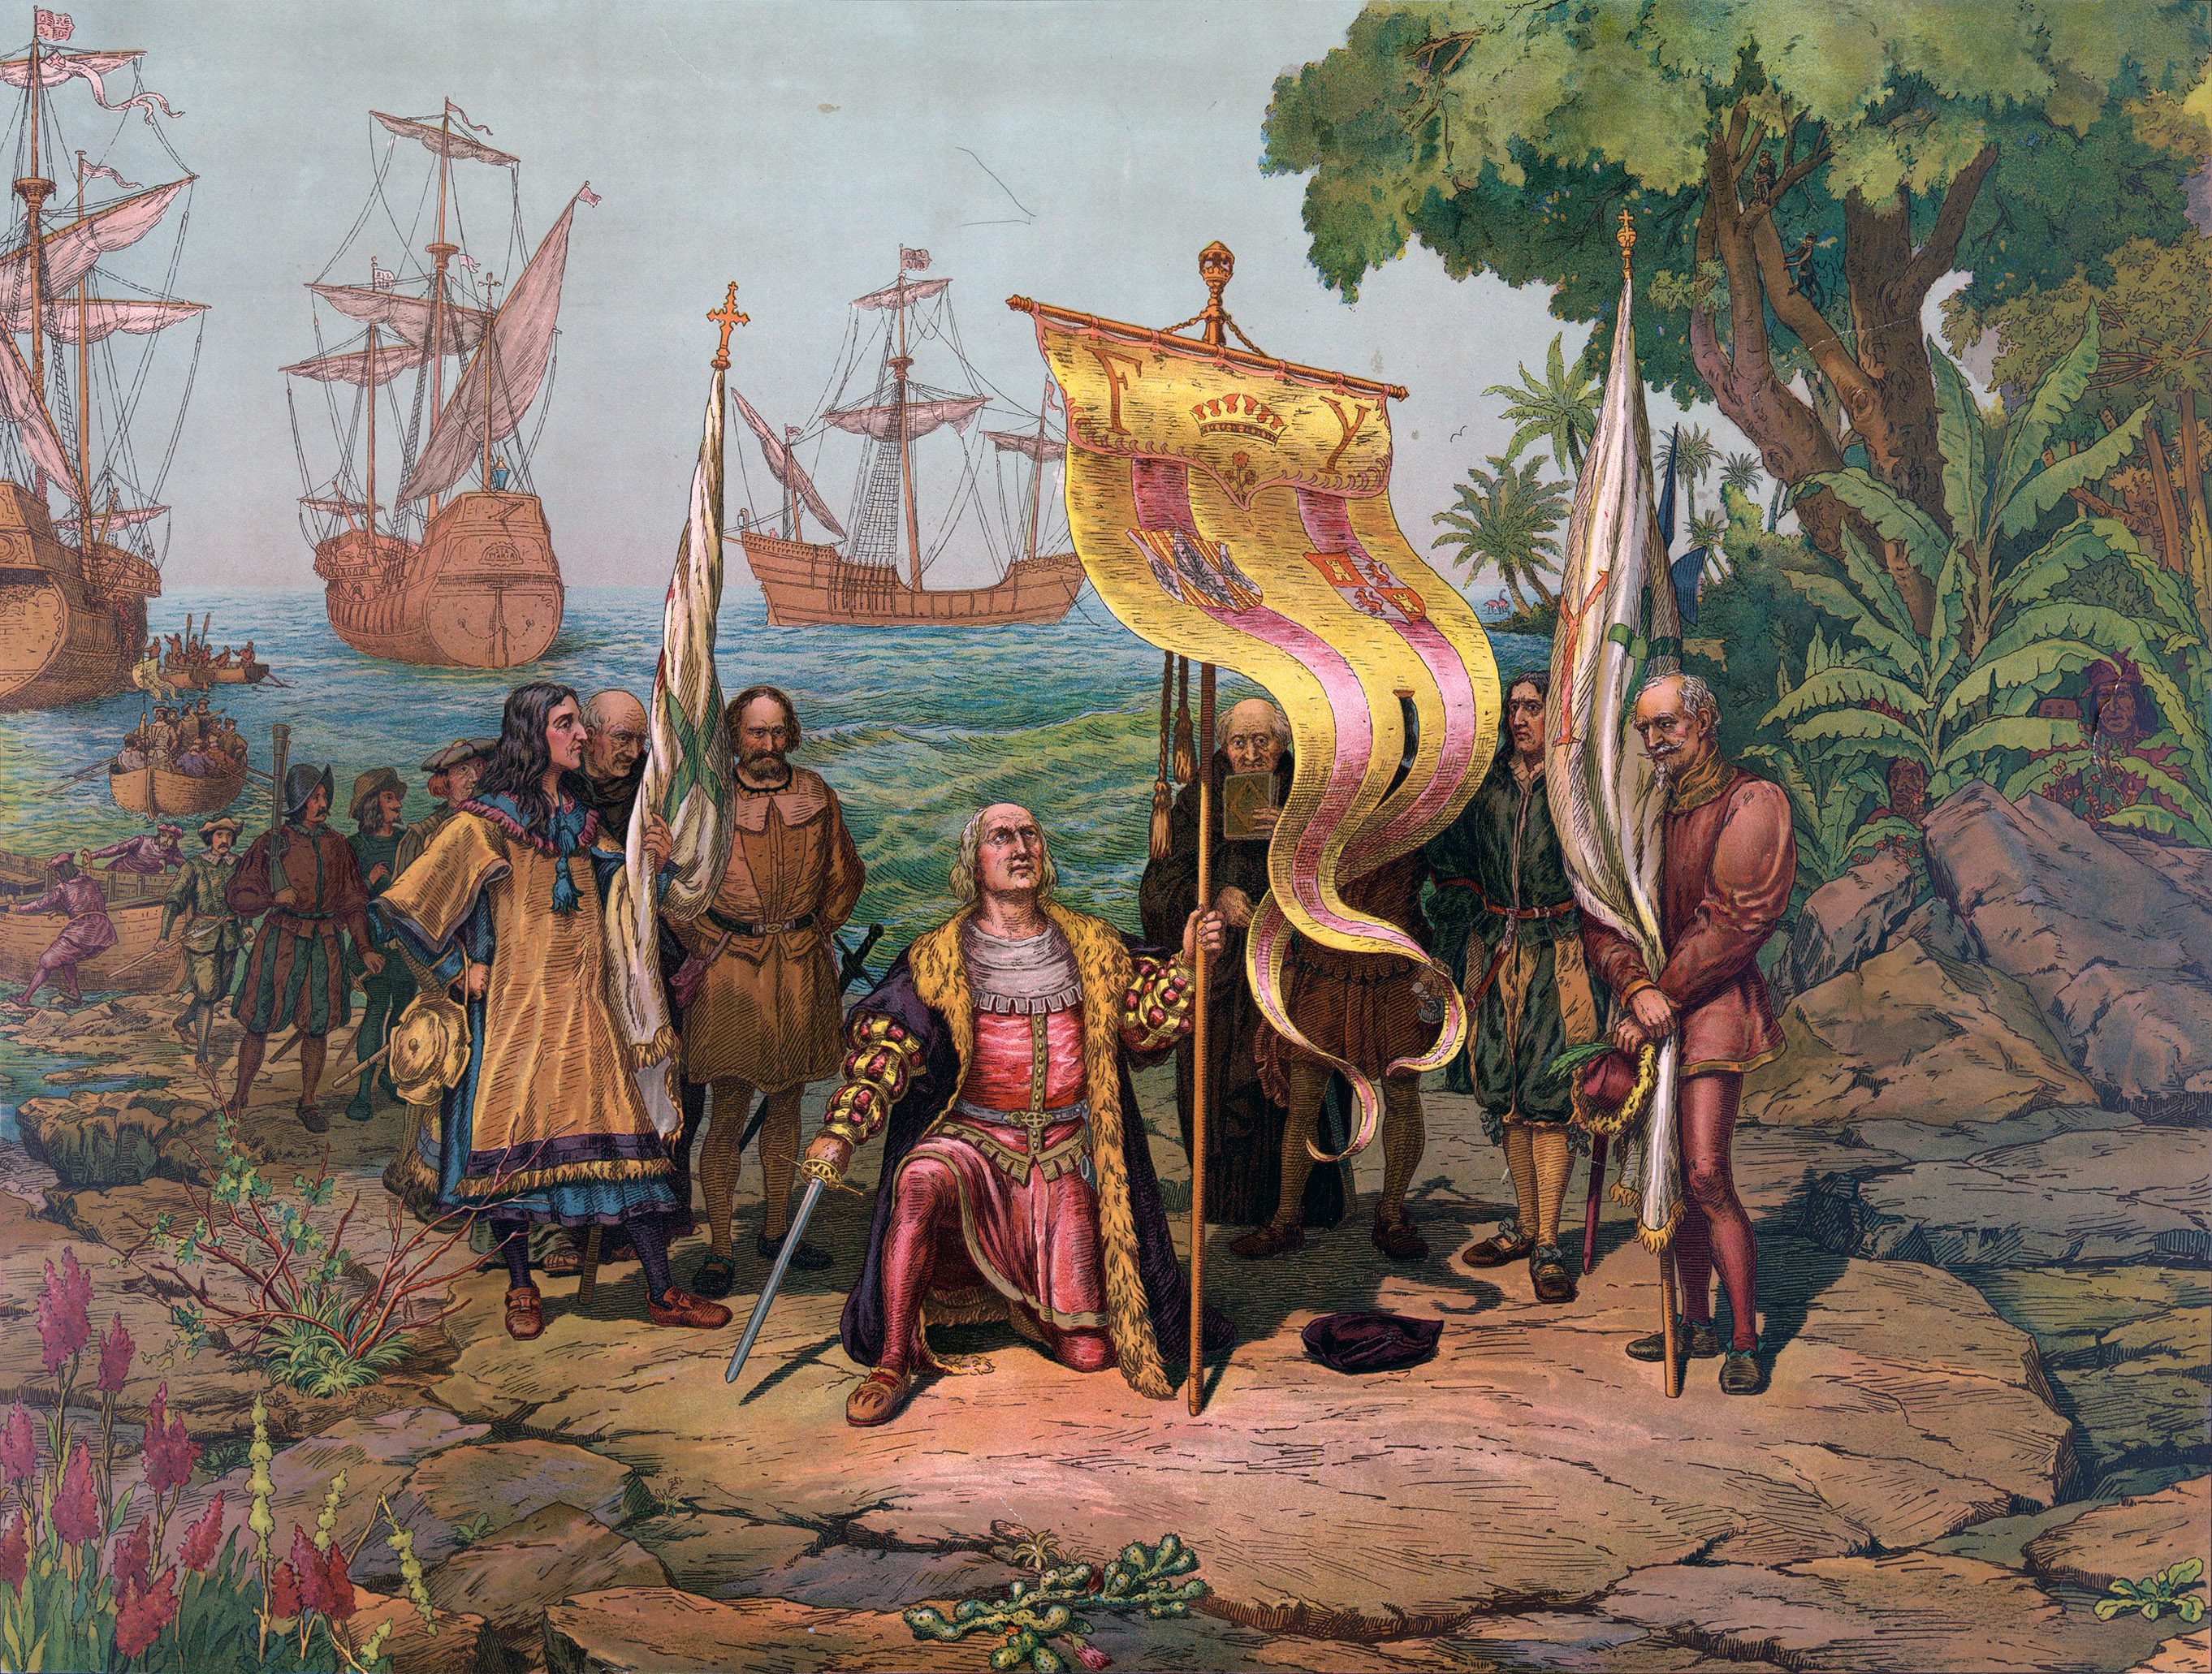 La scoperta dell’America e l’arrivo dei conquistadores nel Nuovo mondo